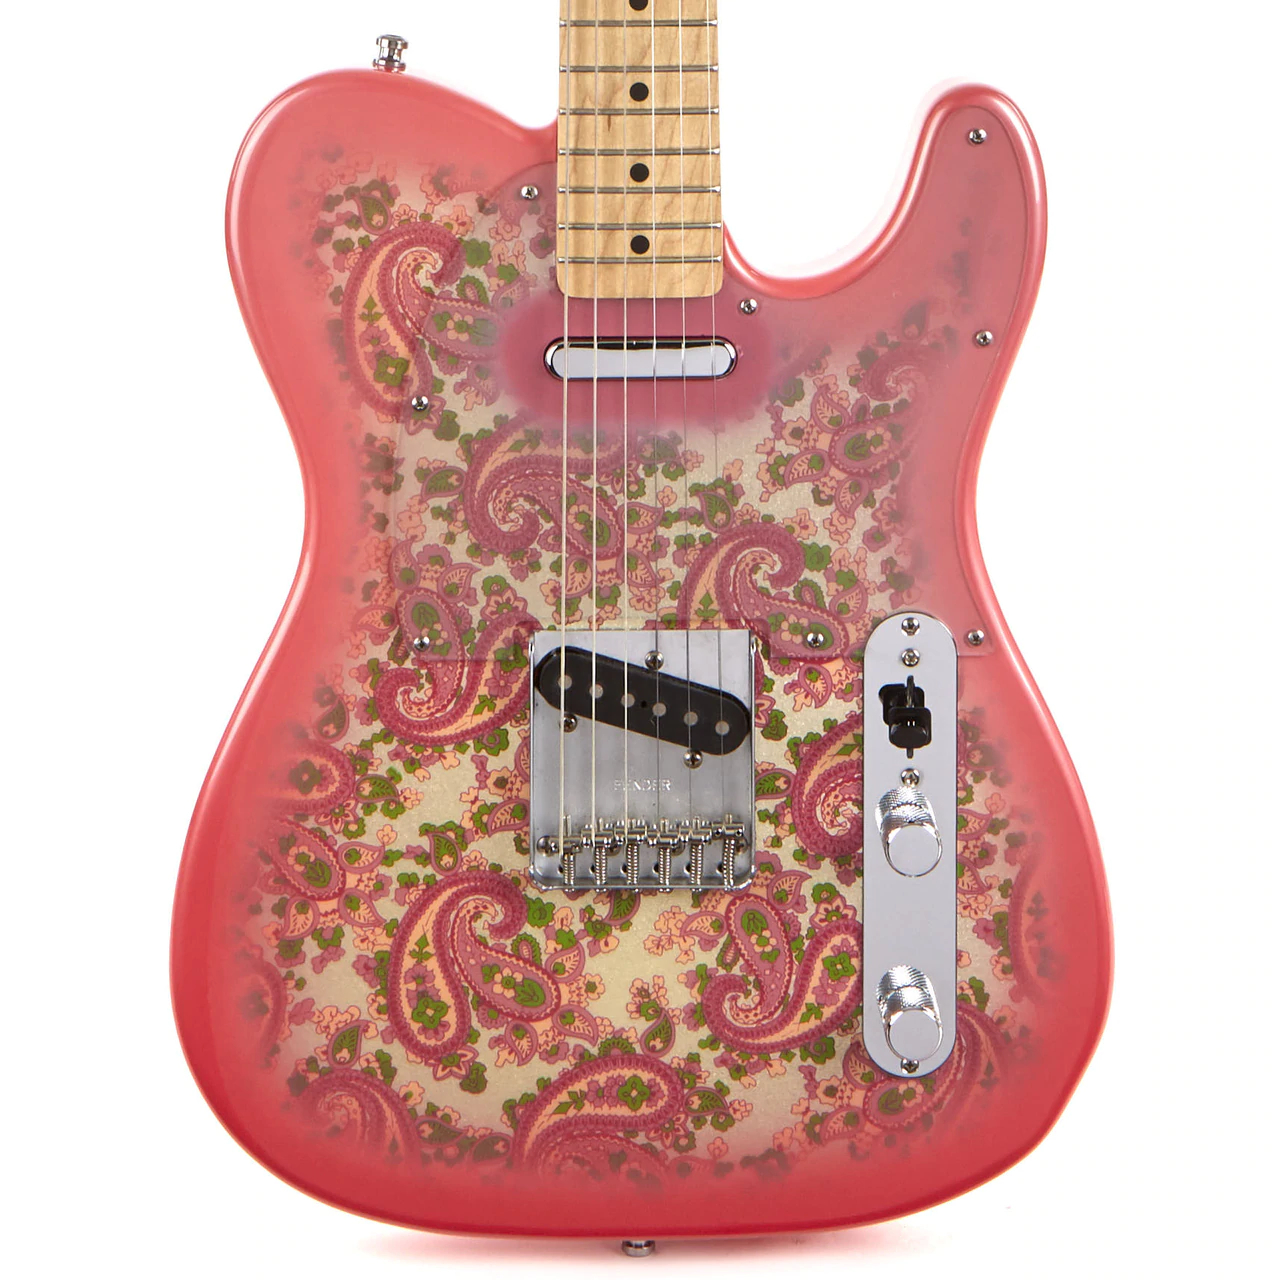 Компания Fender даже выпустила специальный дизайн своих легендарных гитар T...